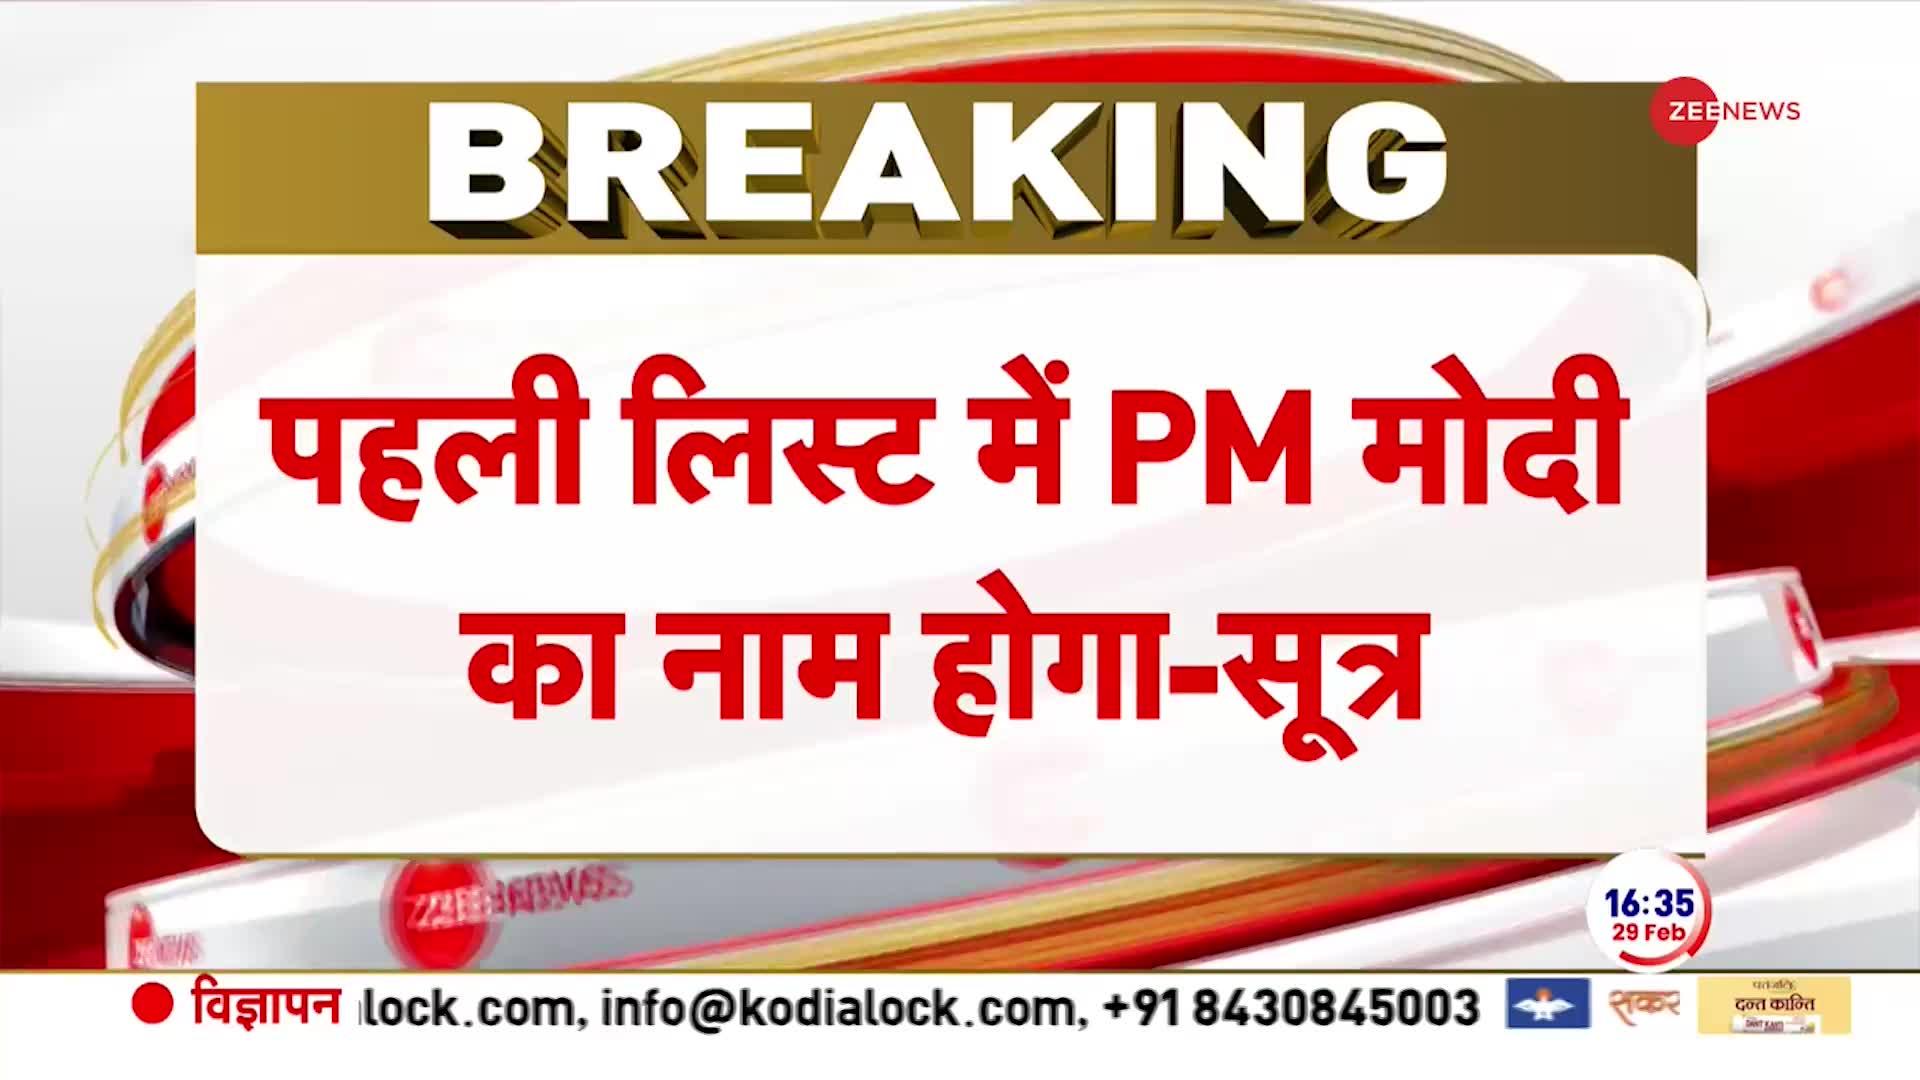 BJP Breaking: पहली लिस्ट पर PM मोदी का नाम होगा । BJP Meeting। List for Loksabha Chunav